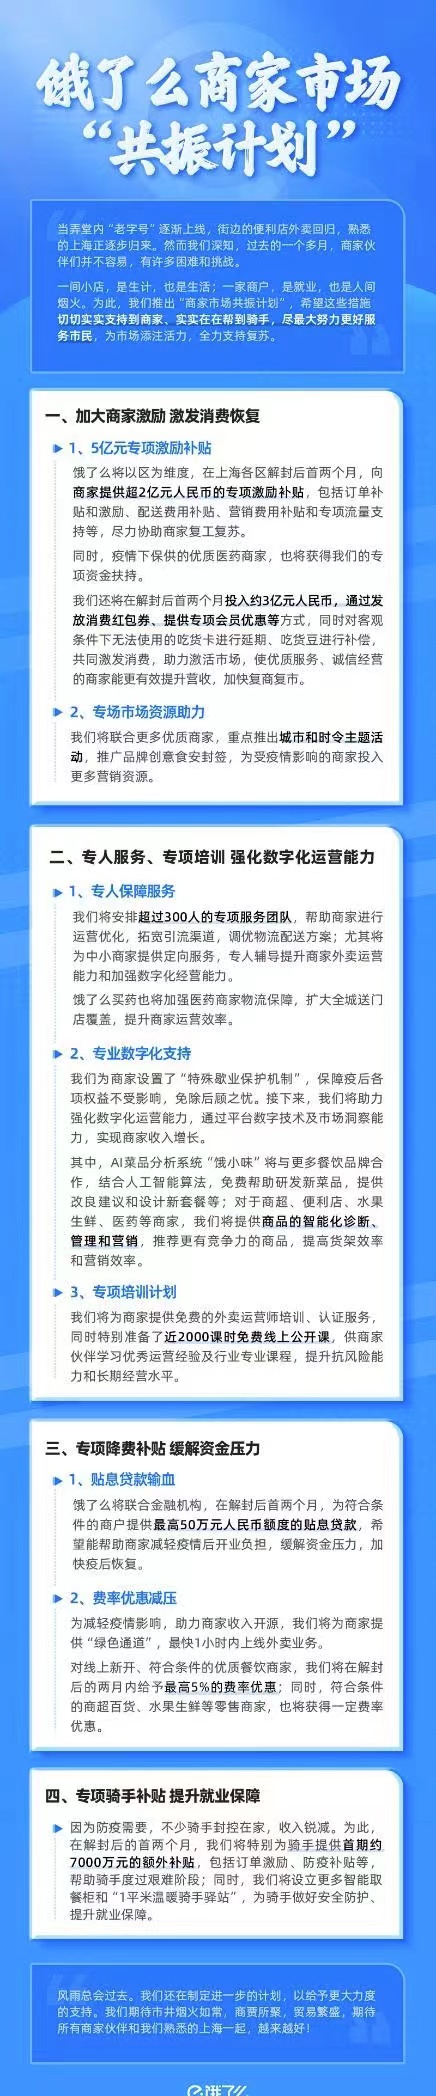 饿了么启动“共振计划”：5亿激励、降费补贴等支持上海商家复苏